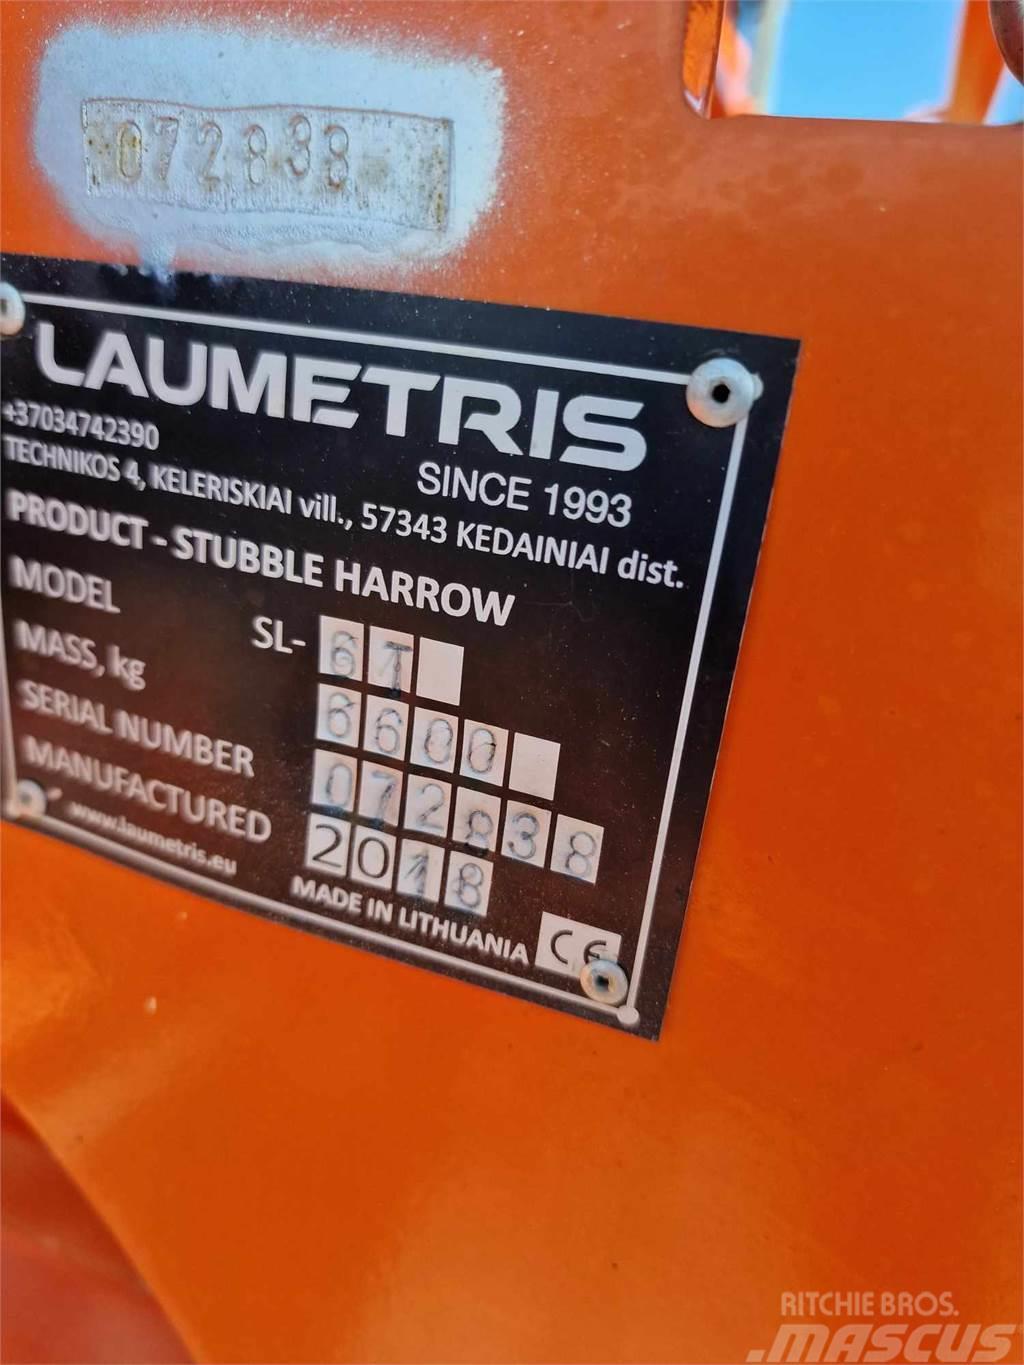  Laumetris SL 6T Tallerkenharver